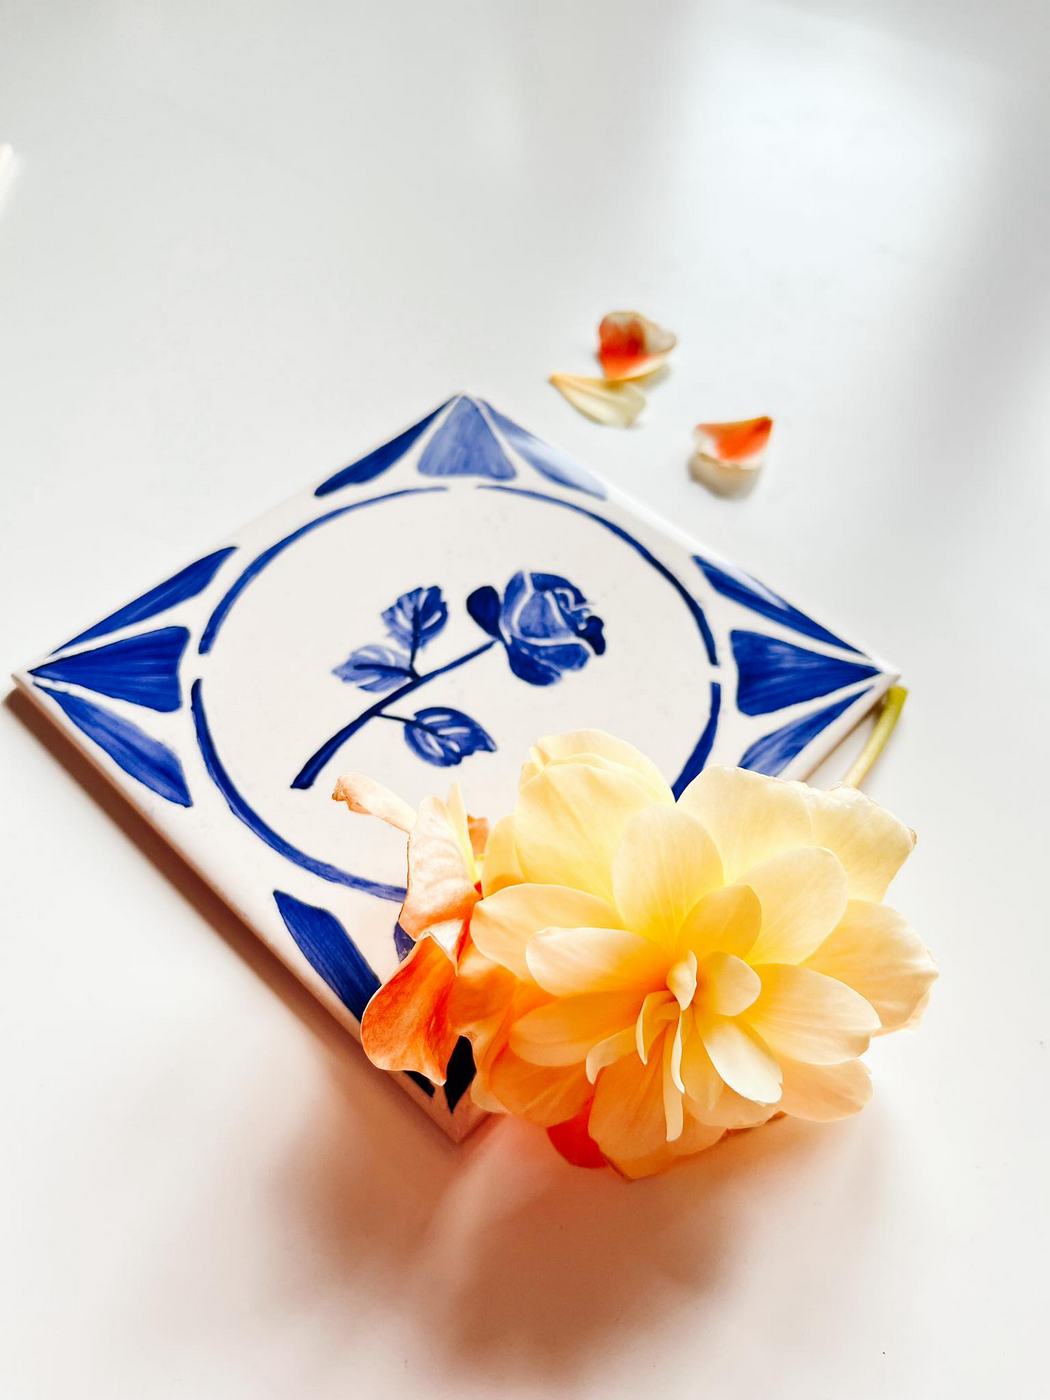 Róża namalowana na kafelku ceramicznym, niebieska ukochana Małego Księcia